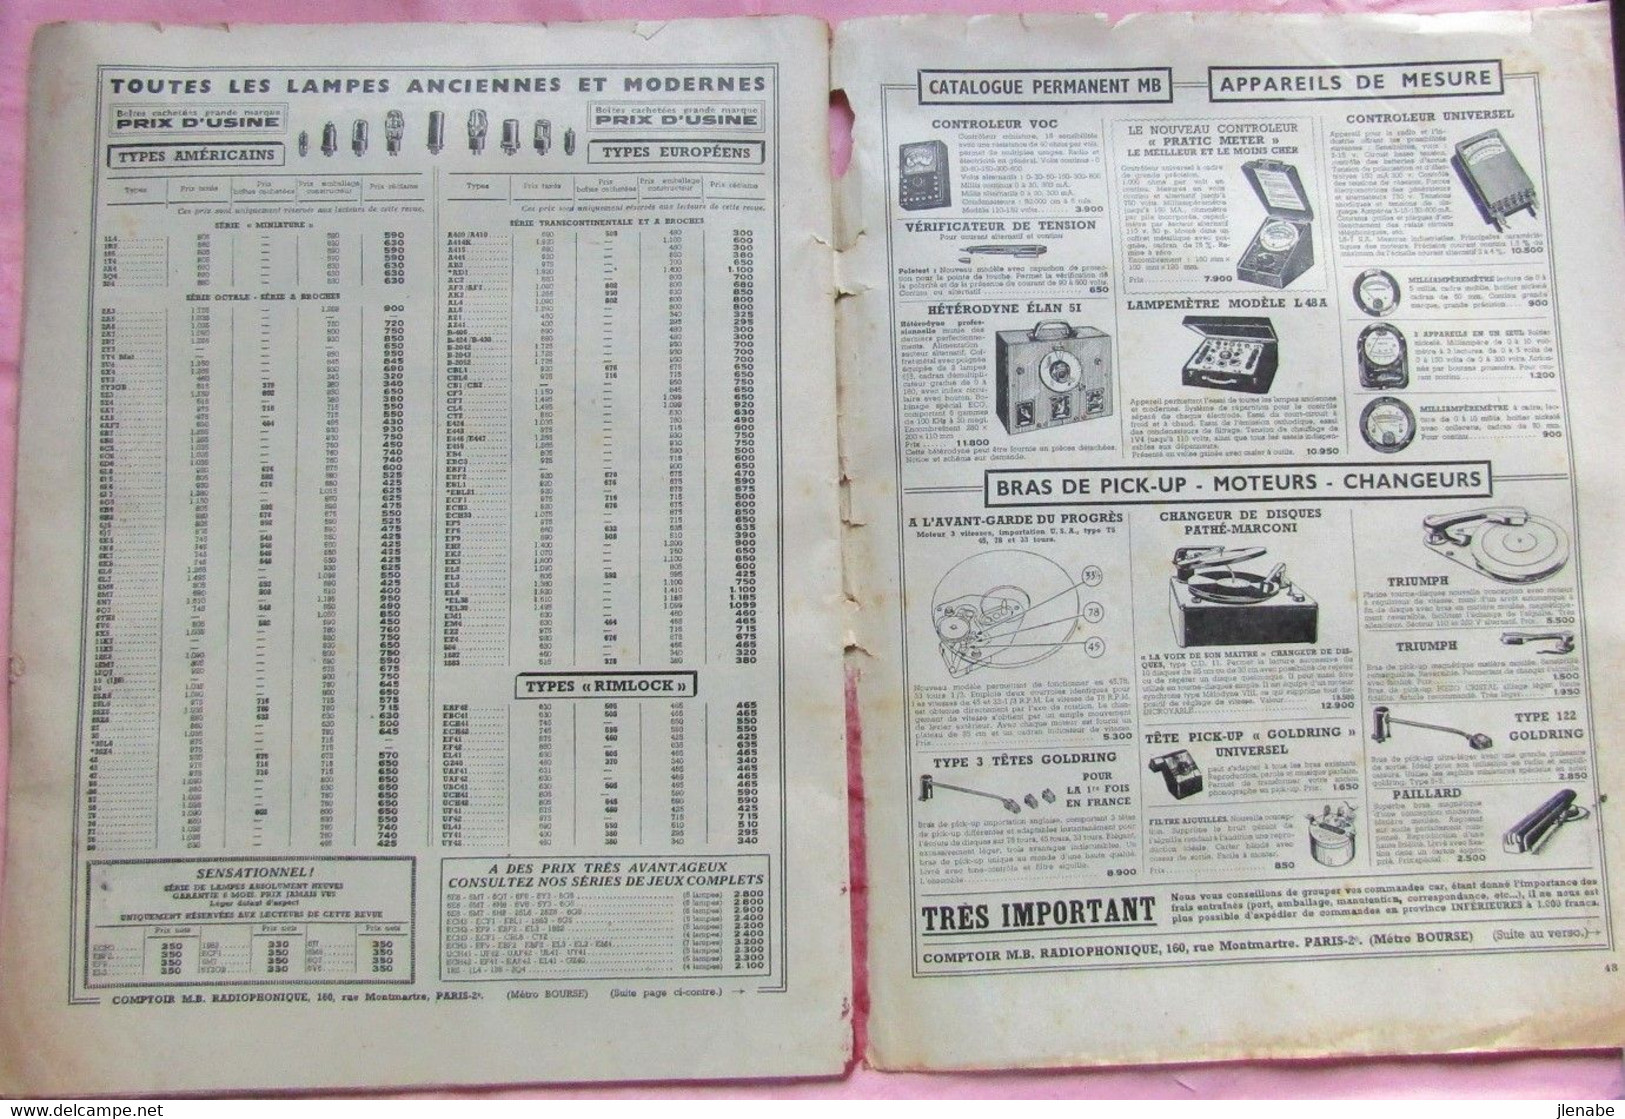 Vieux magazine " Radio Plans " de novembre 1951